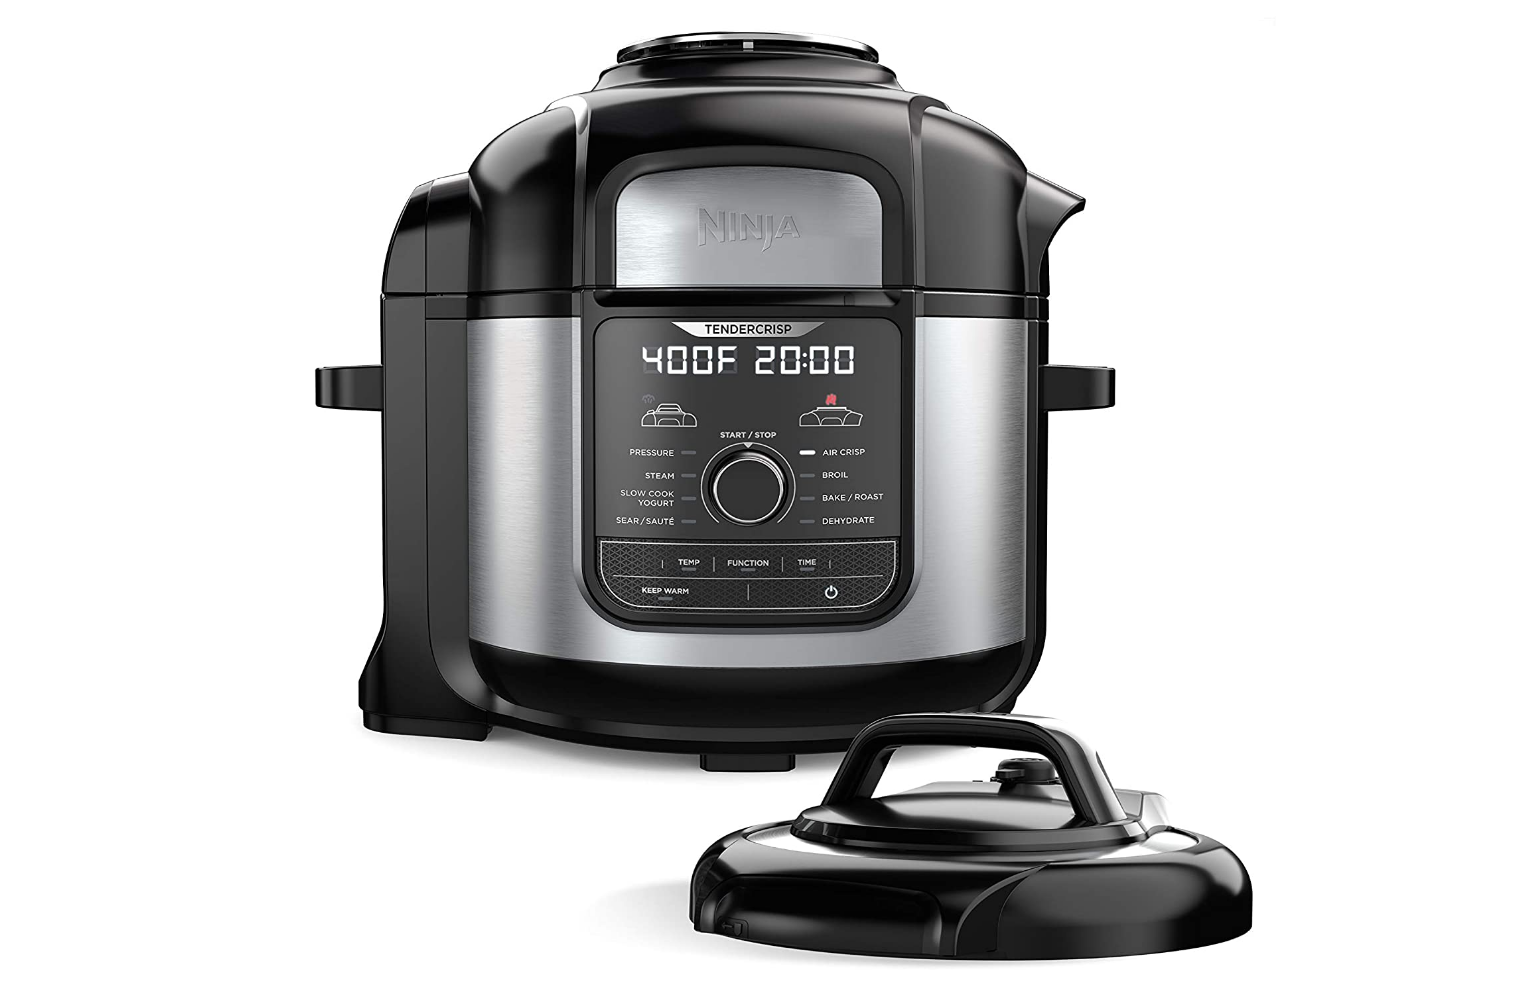 Ninja FD401 Foodi 8-Quart 9-in-1 Deluxe XL Pressure Cooker Review